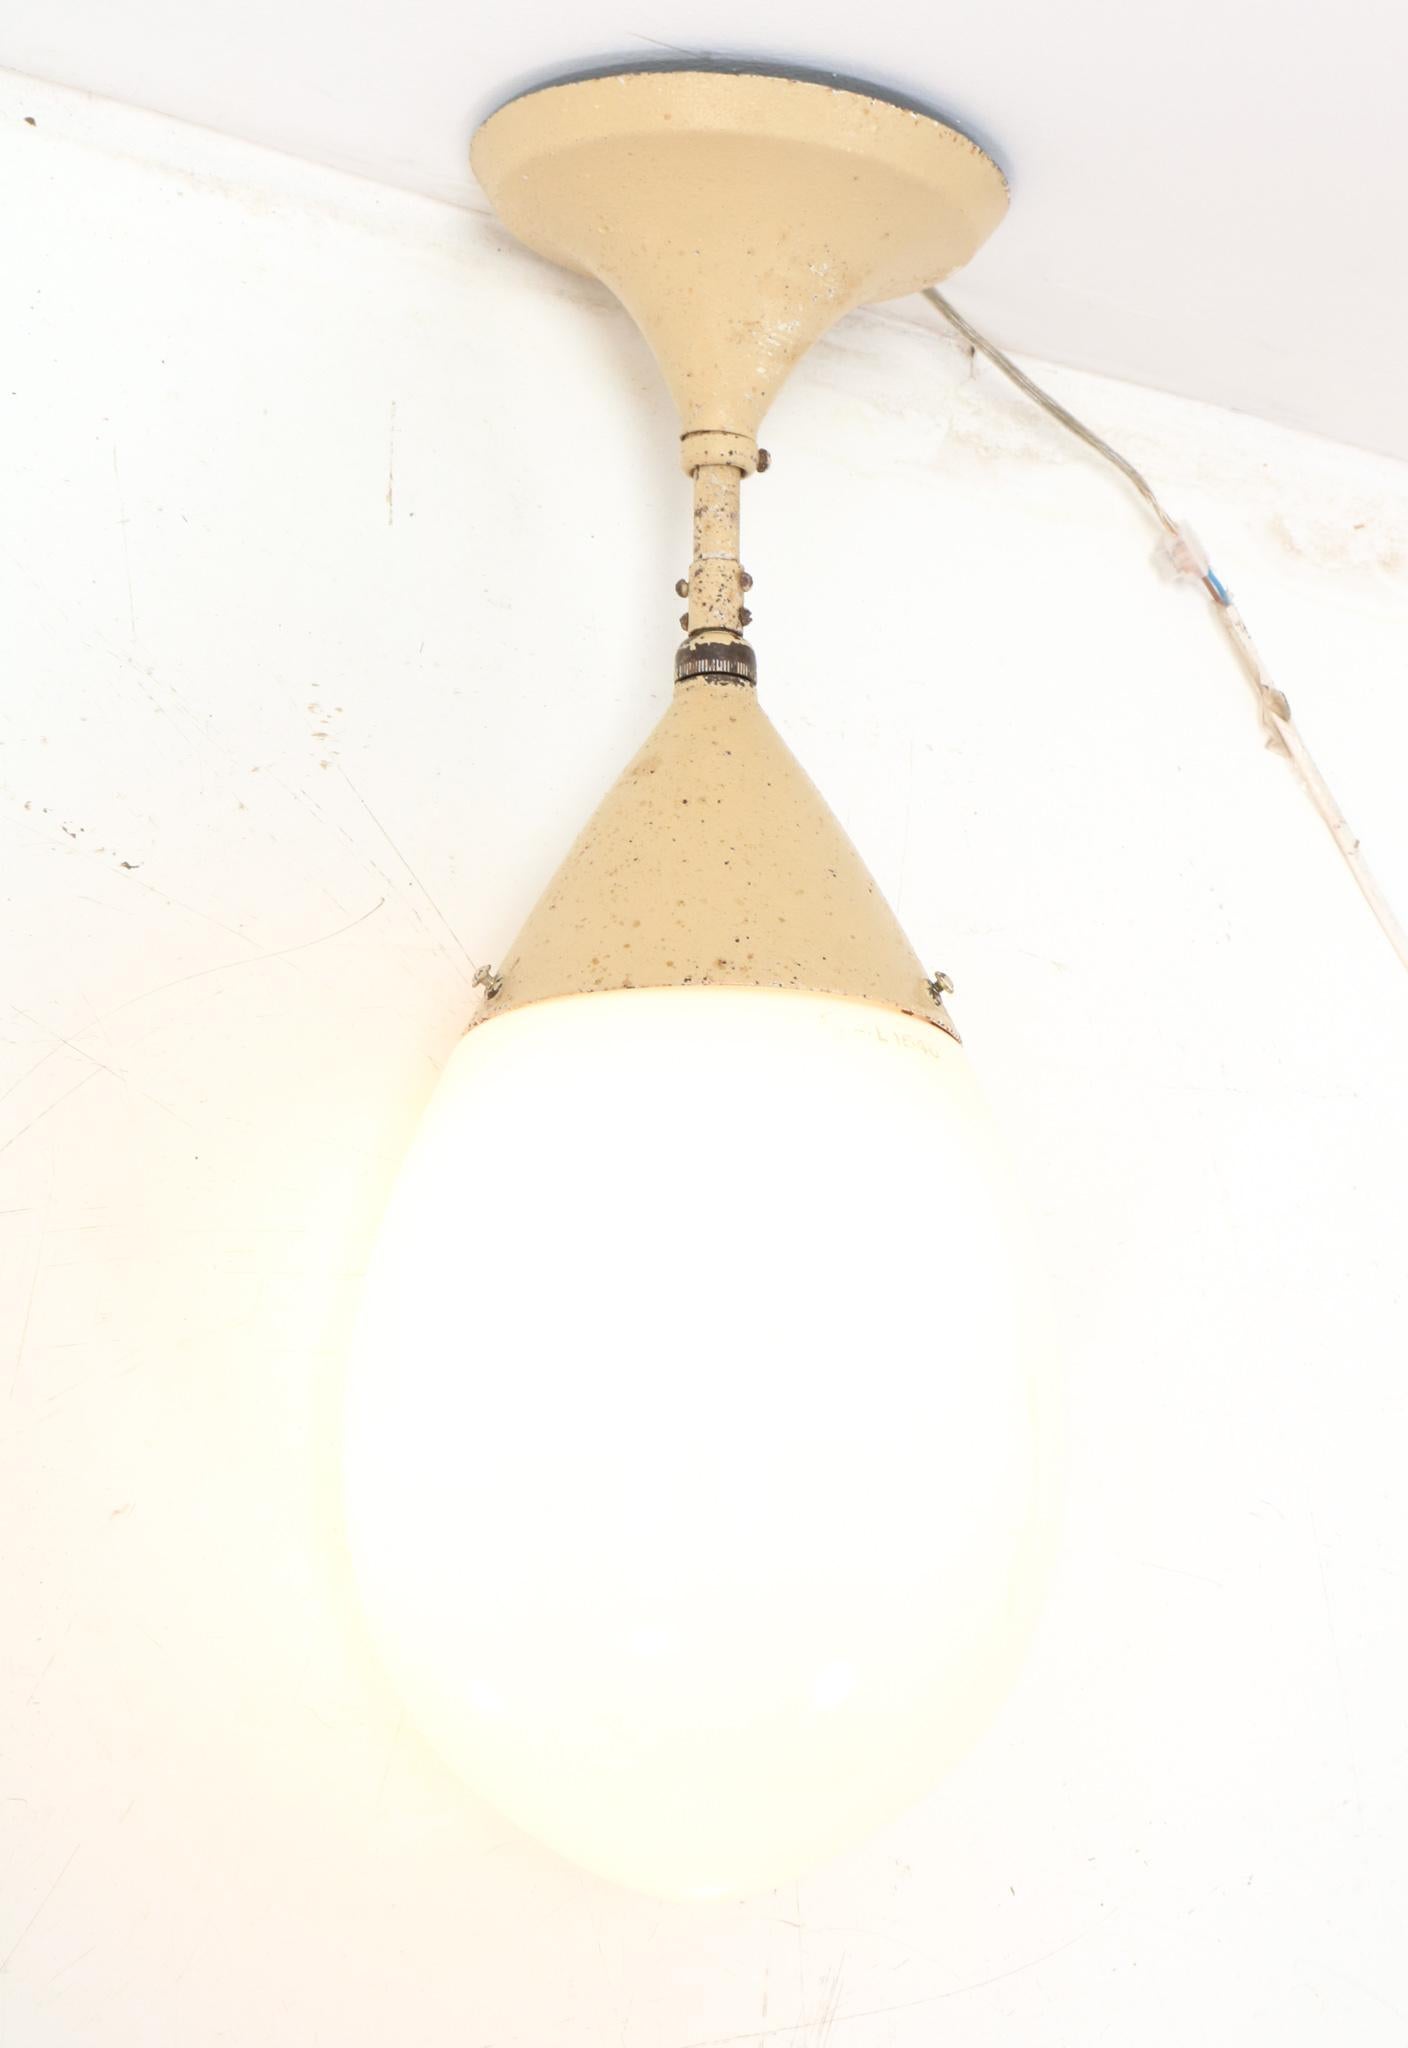 Magnifique et ultra rare lampe pendante Art Déco Bauhaus.
Design de Peter Behrens pour Siemens.
Un design allemand saisissant des années 1920.
Cadre original en métal laqué avec abat-jour original en verre laiteux.
L'abat-jour porte la marque